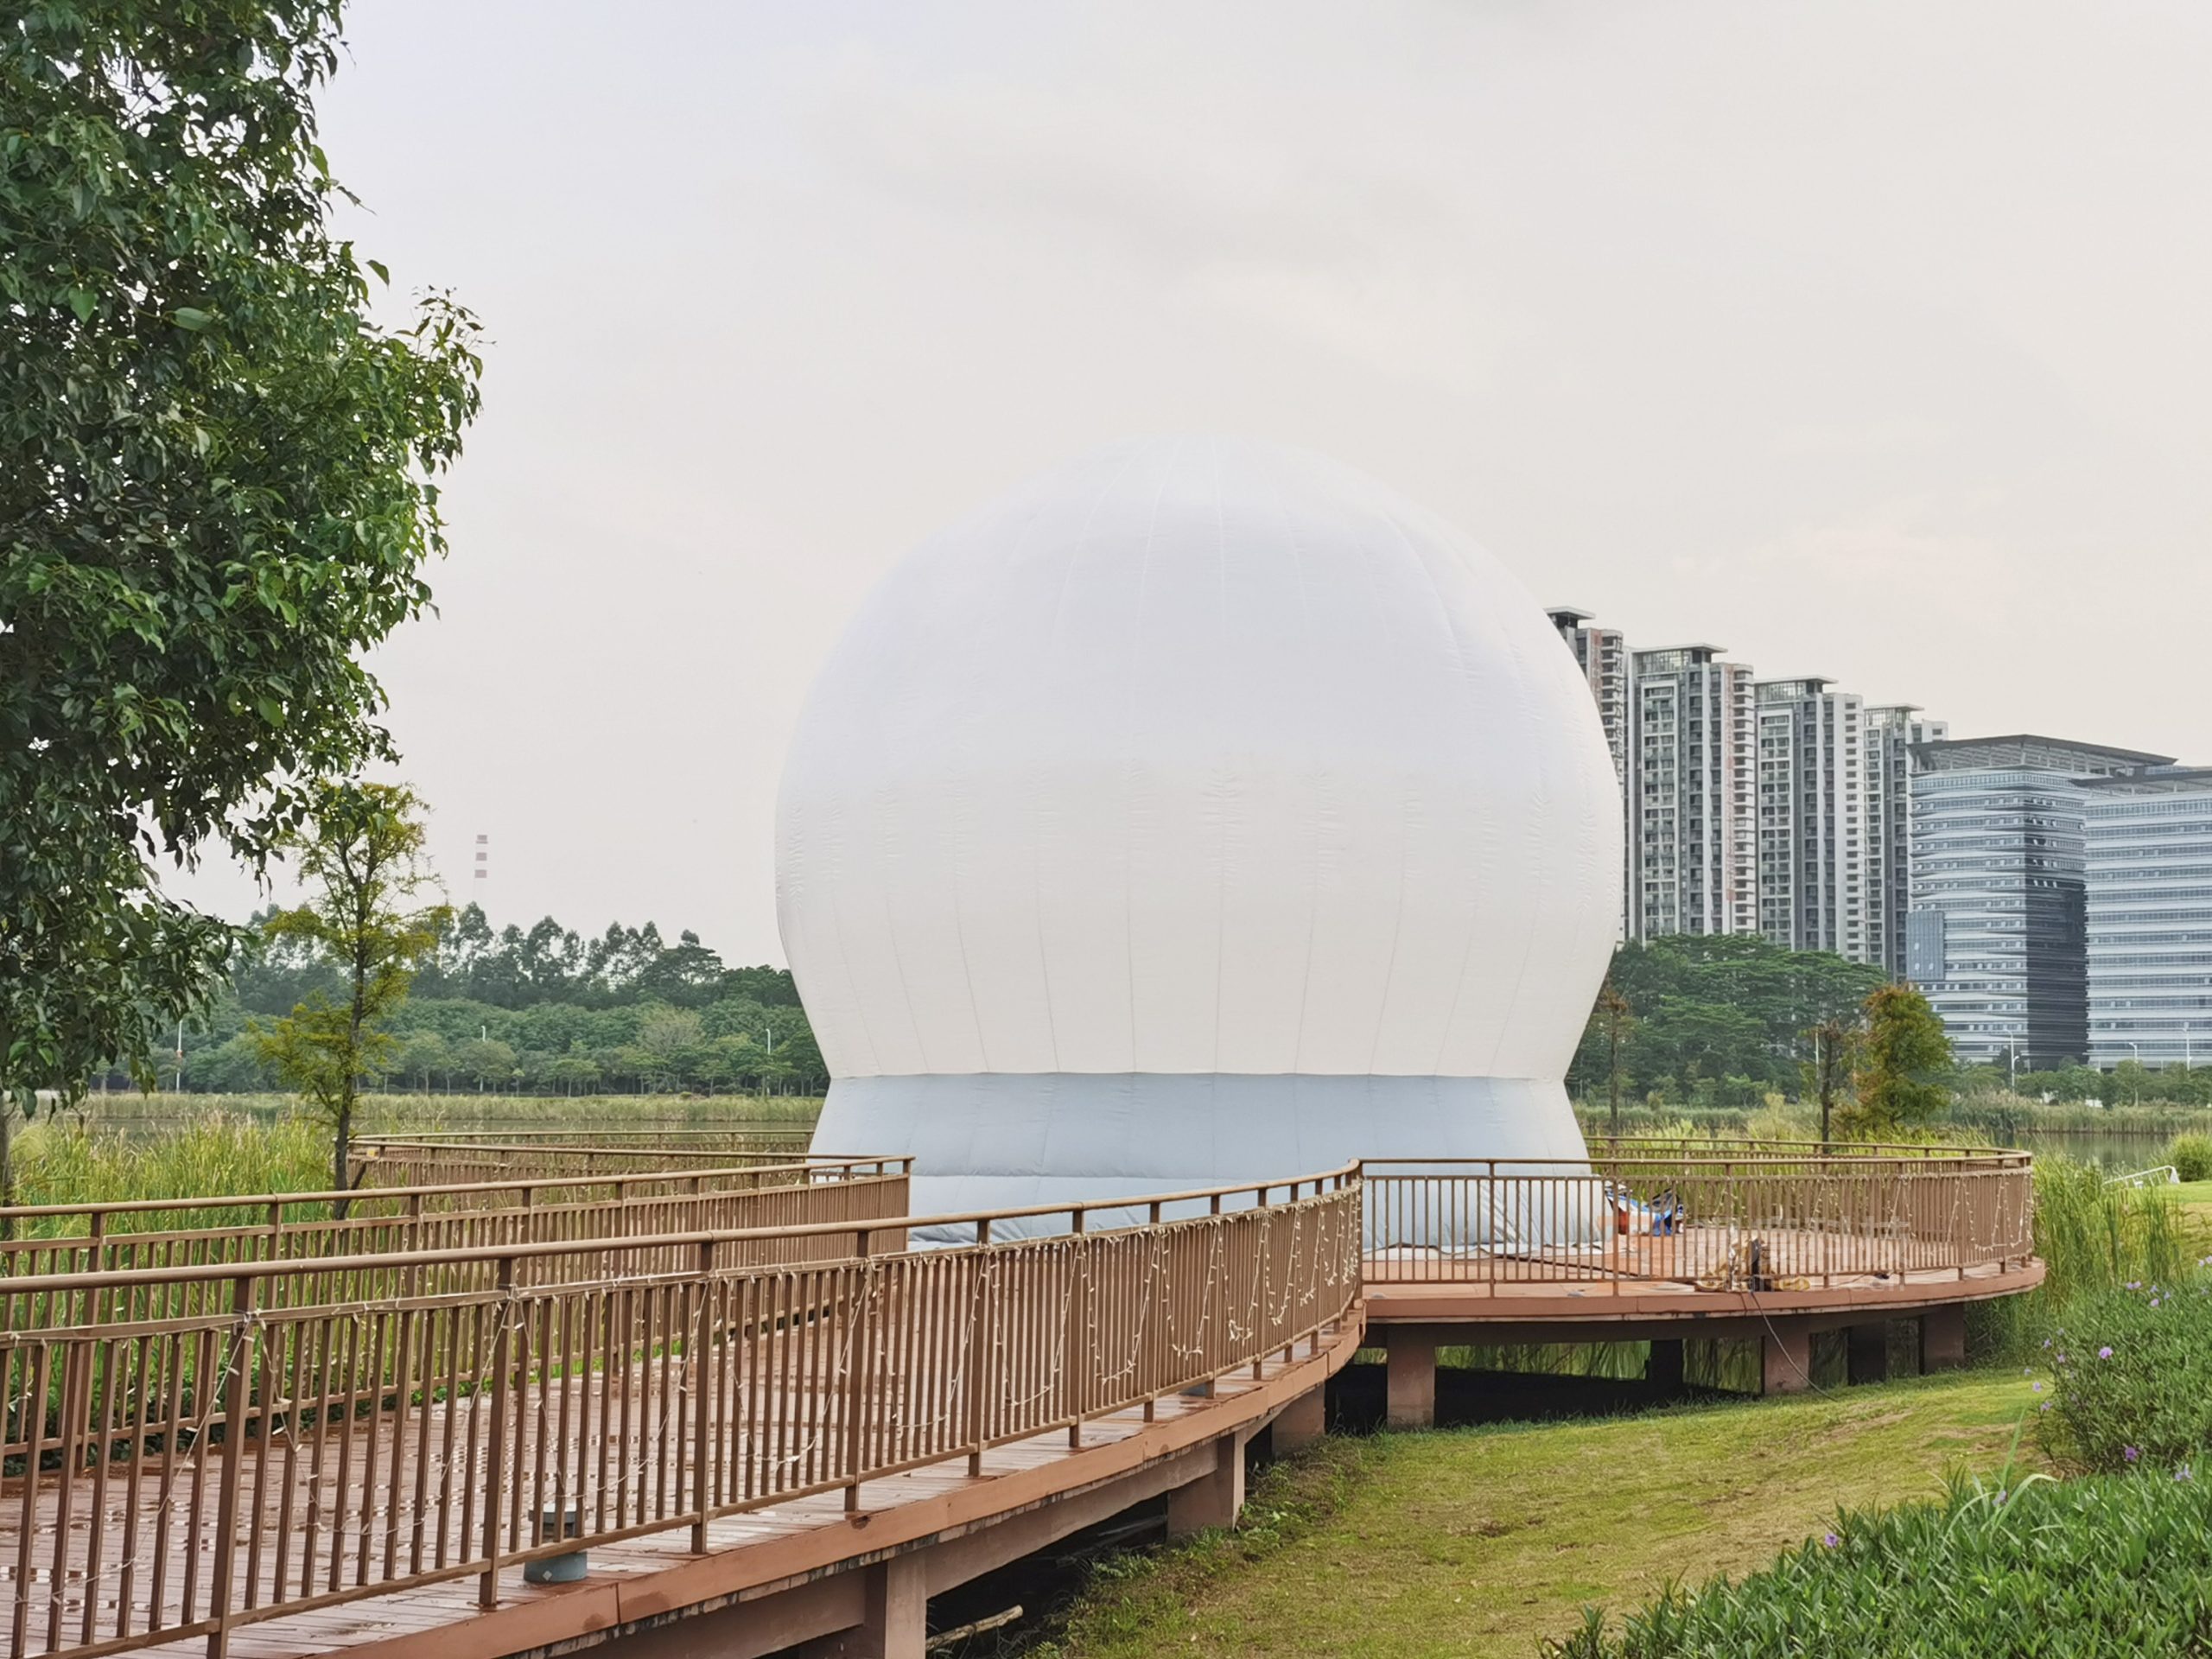 【案例】2023年国庆活动 中山市翠湖公园 10米充气户外 景观球幕